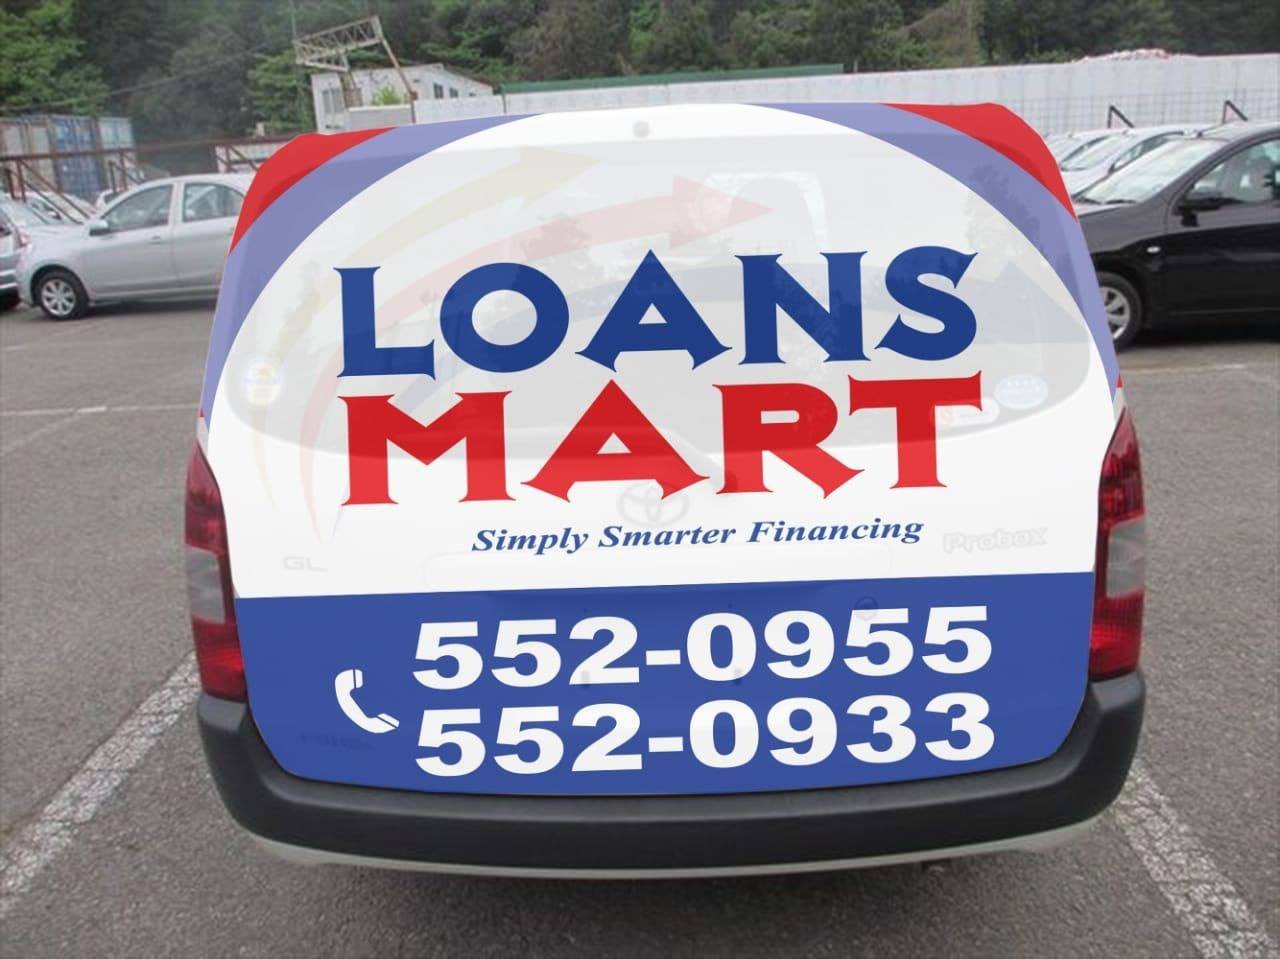 Loans Mart - Loans